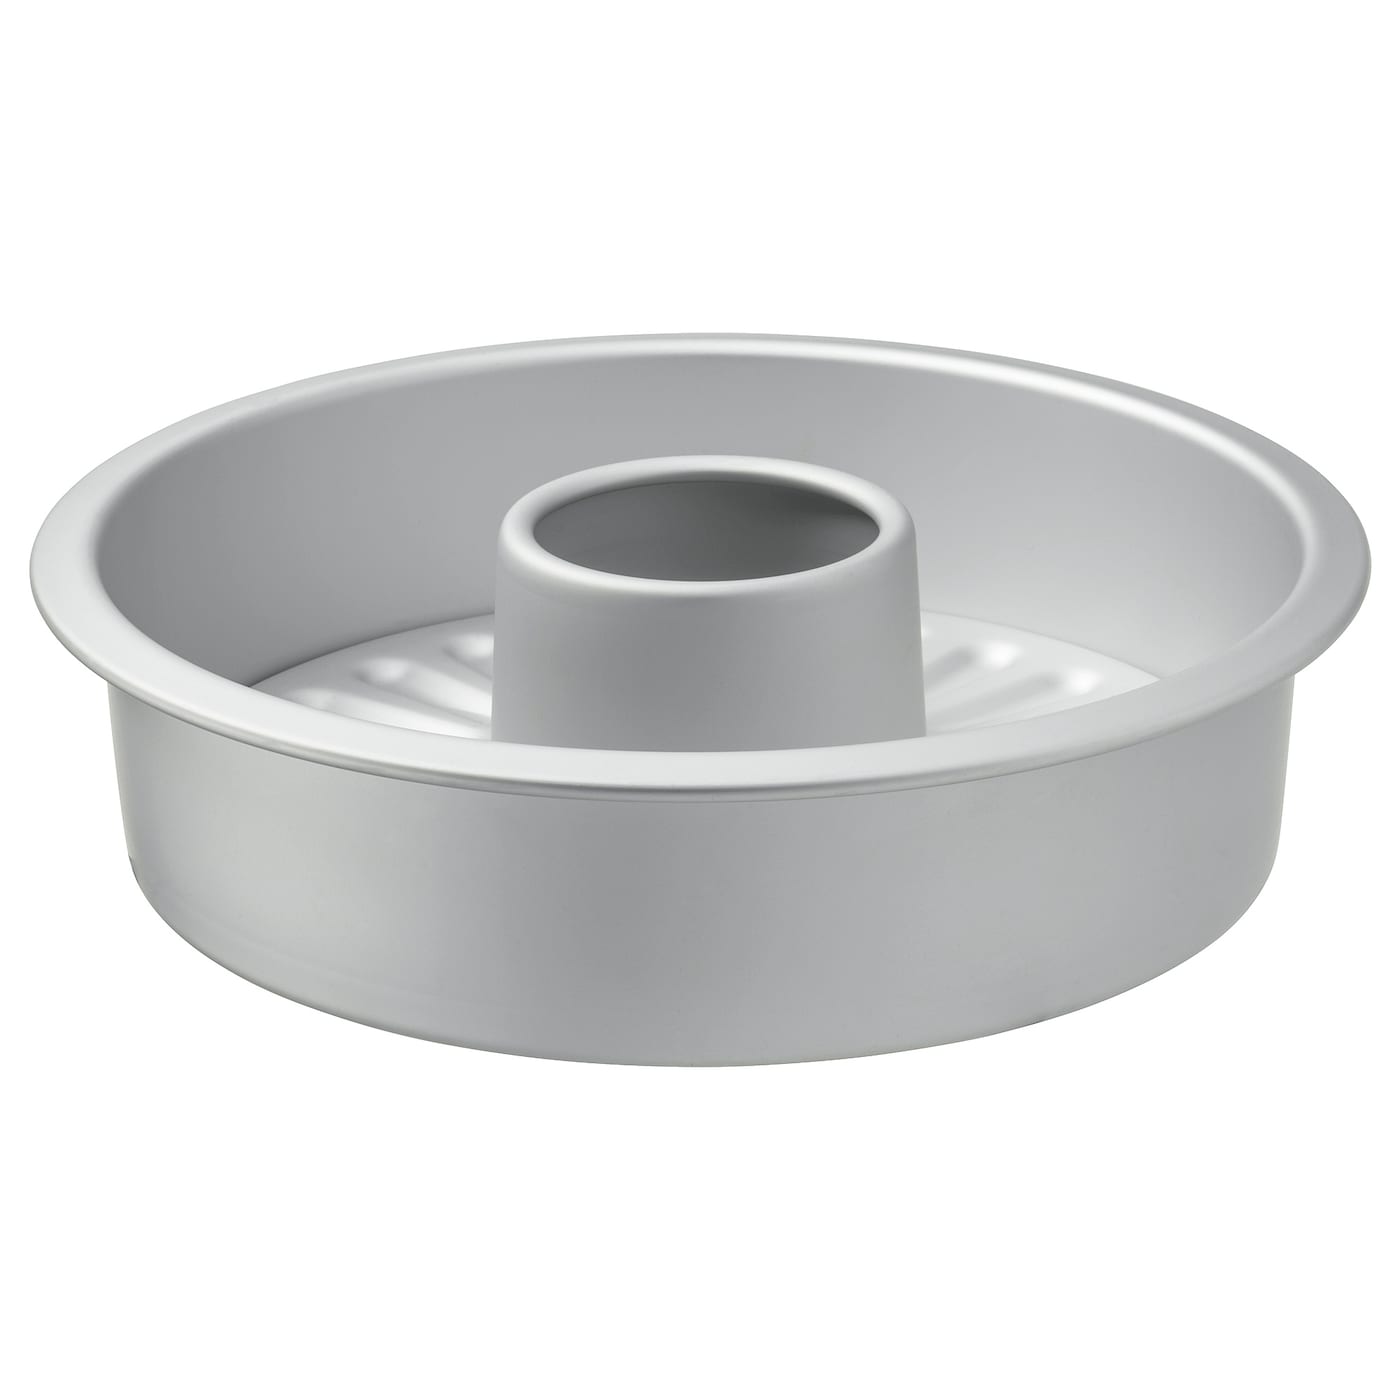 VARDAGEN ВАРДАГЕН Форма д/выпекания со съемным дном, серебристый IKEA форма для выпечки ikea vardagen 38x29 серебристый